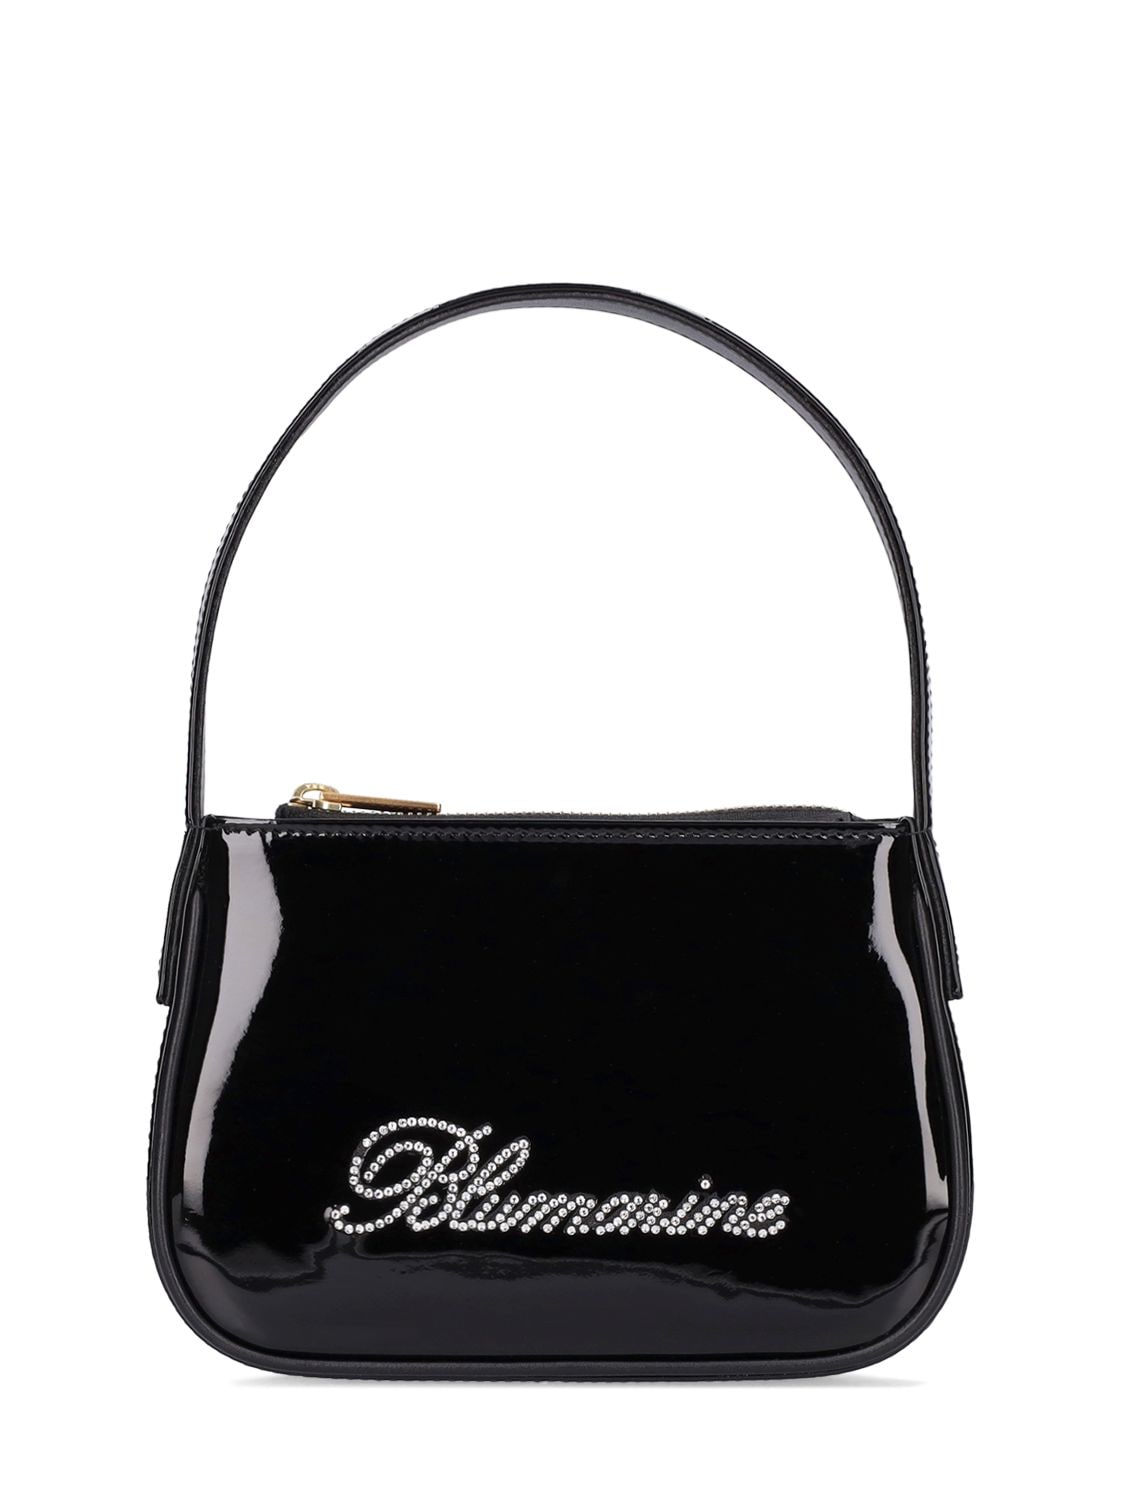 Blumarine Regular Kiss Me Bag in Patent Leather